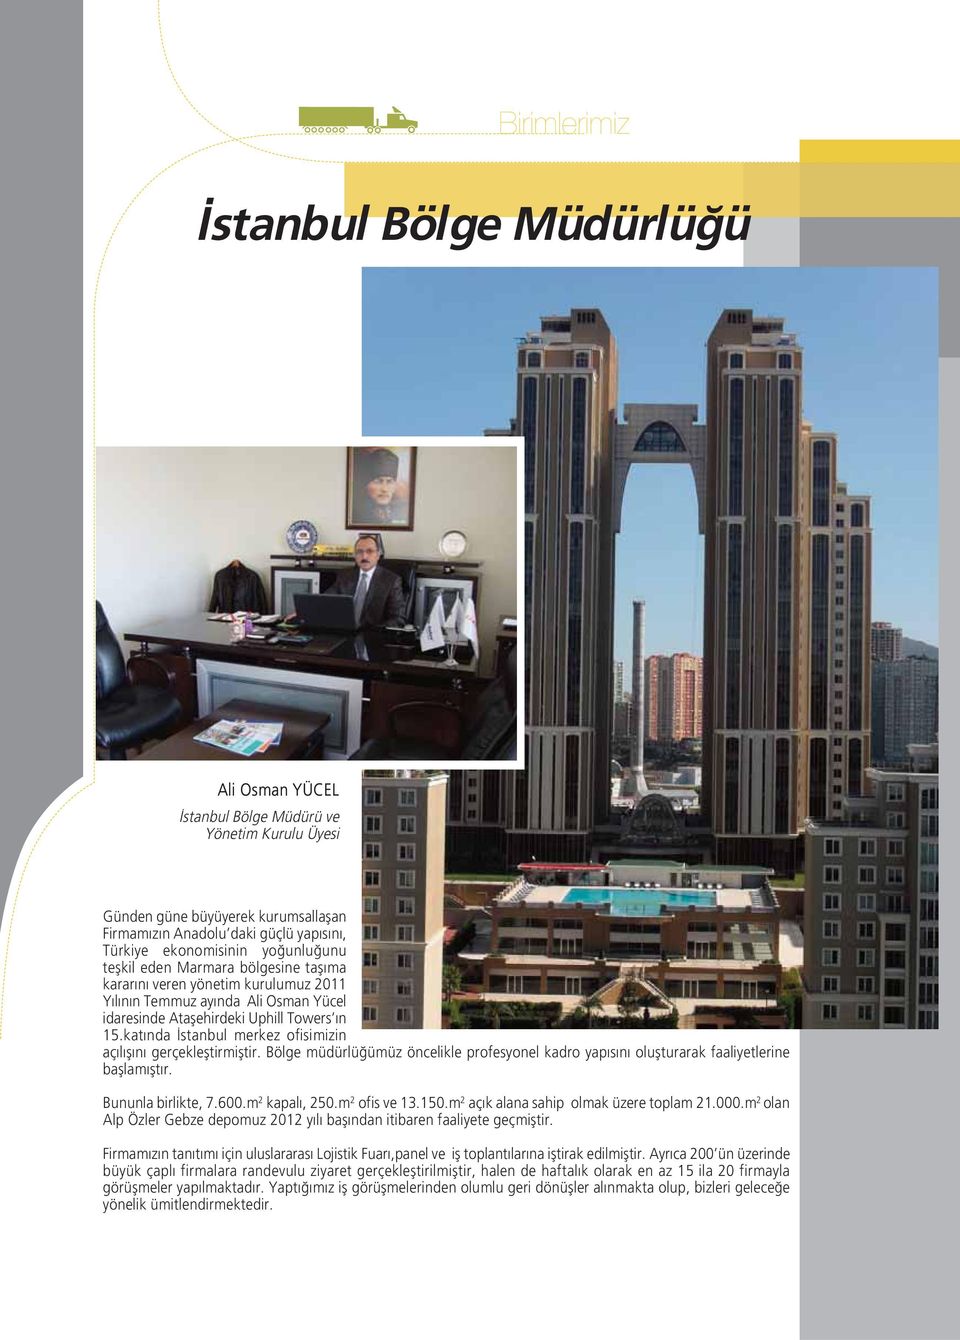 katında İstanbul merkez ofisimizin açılışını gerçekleştirmiştir. Bölge müdürlüğümüz öncelikle profesyonel kadro yapısını oluşturarak faaliyetlerine başlamıştır. Bununla birlikte, 7.600.